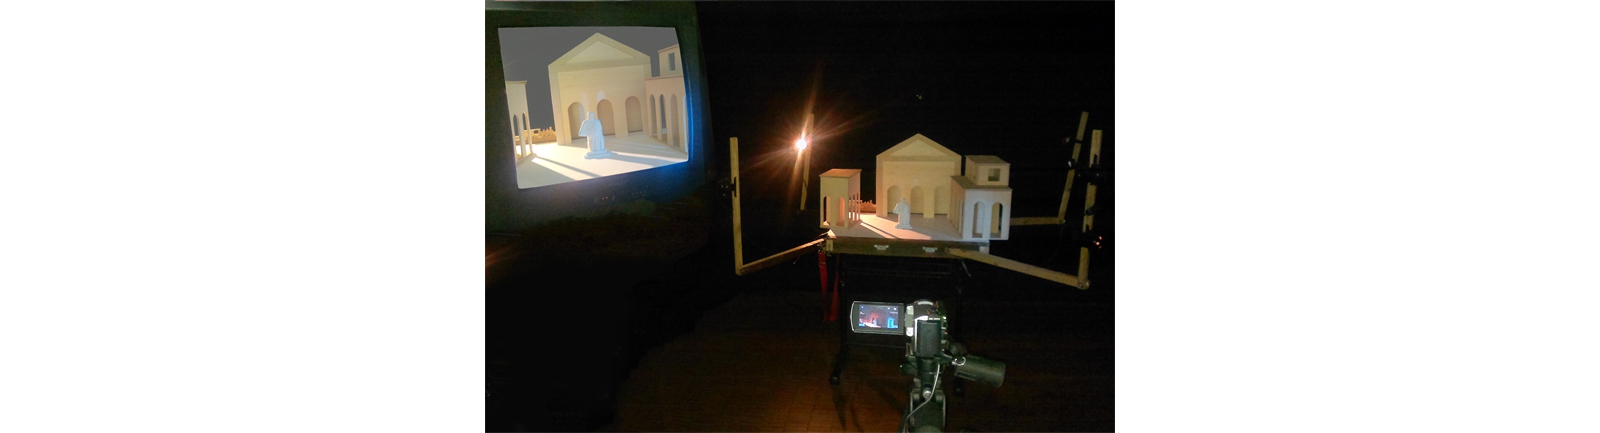 il teatrino di De Chirico -  videocamera e monitor